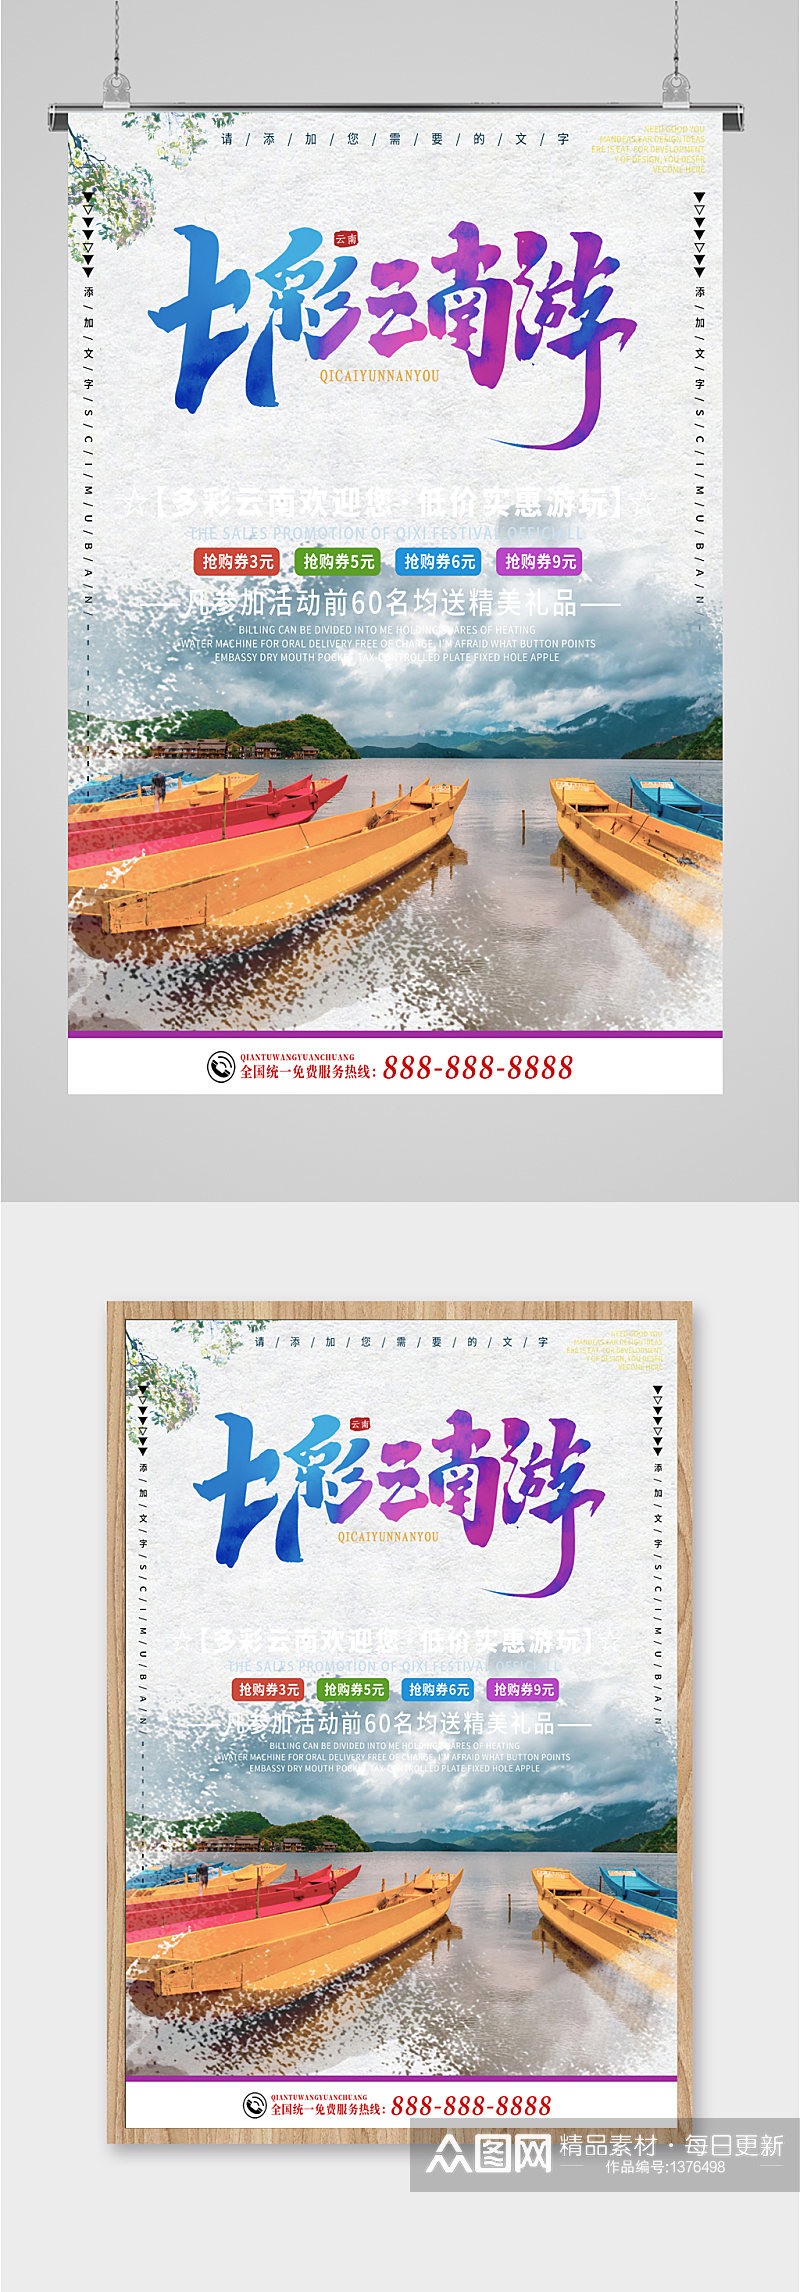 云南旅游旅行社海报素材